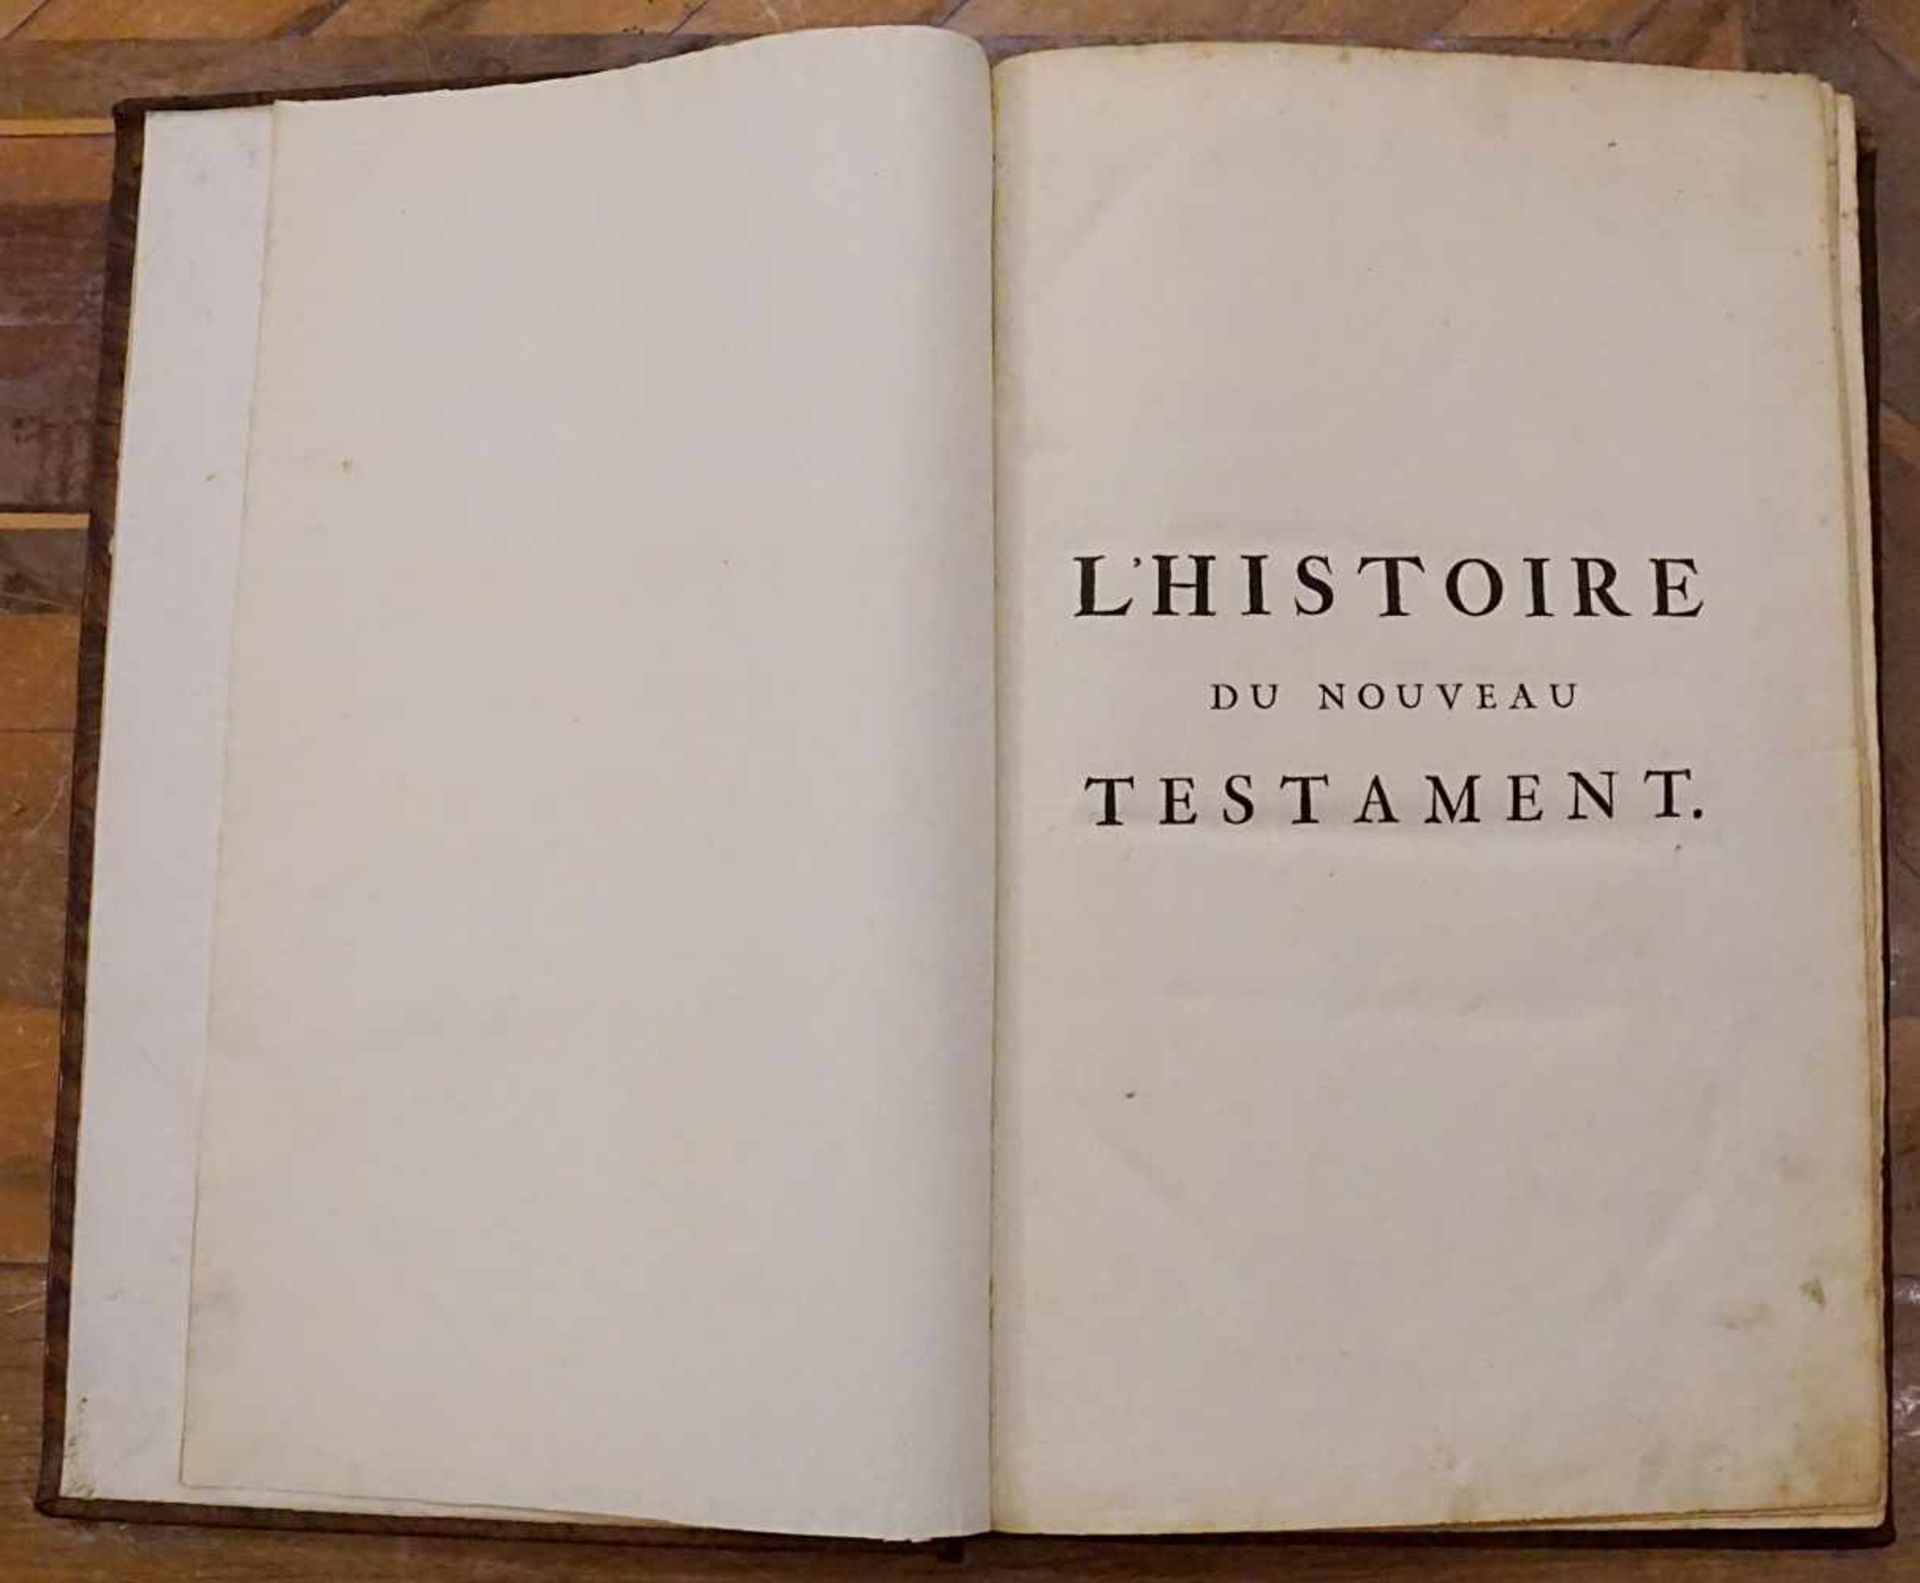 Buch "L'Histoire du Nouveau Testament", Herausgeber Pierre MORTIER, Amsterdam 1700Titelkupfer, - Image 3 of 3